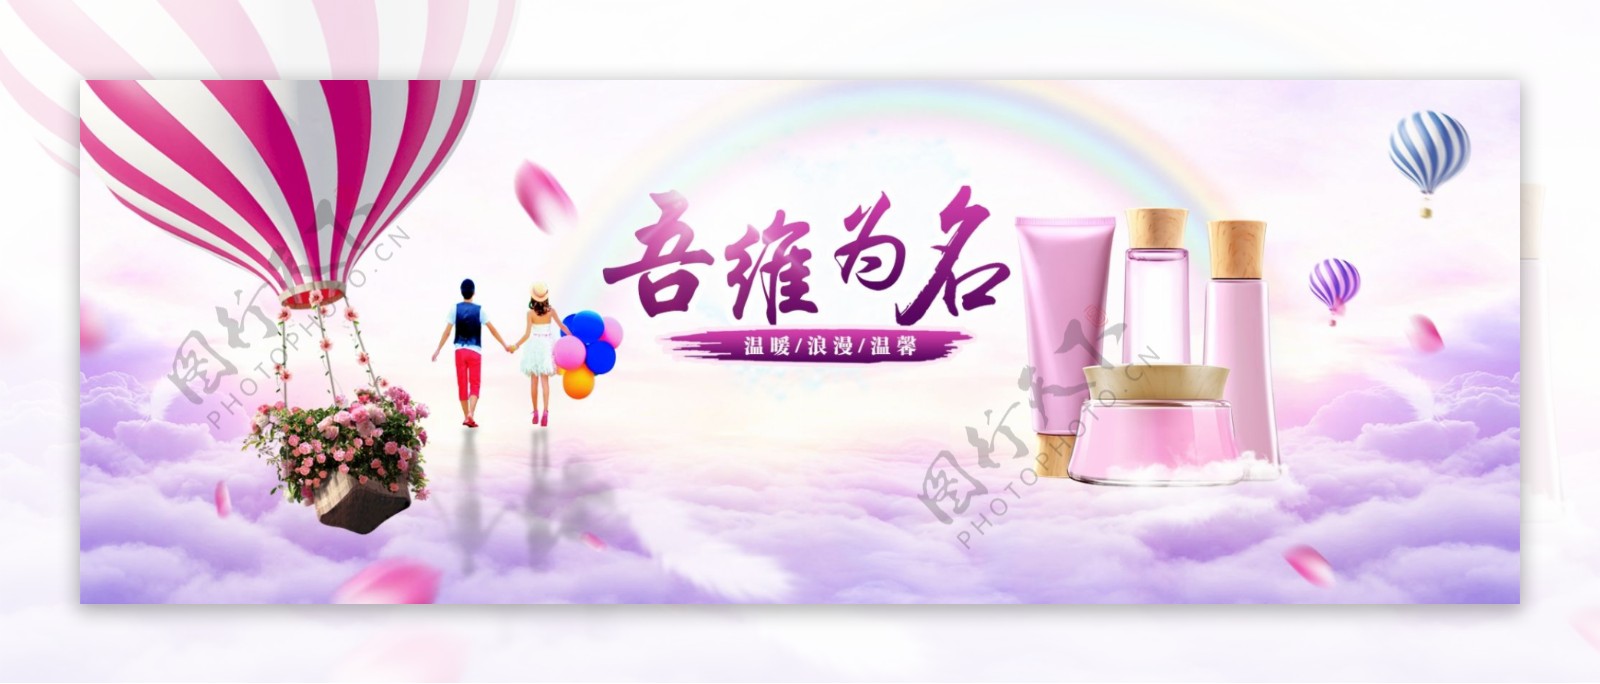 化妆品浪漫温馨爱情热气球彩虹banner